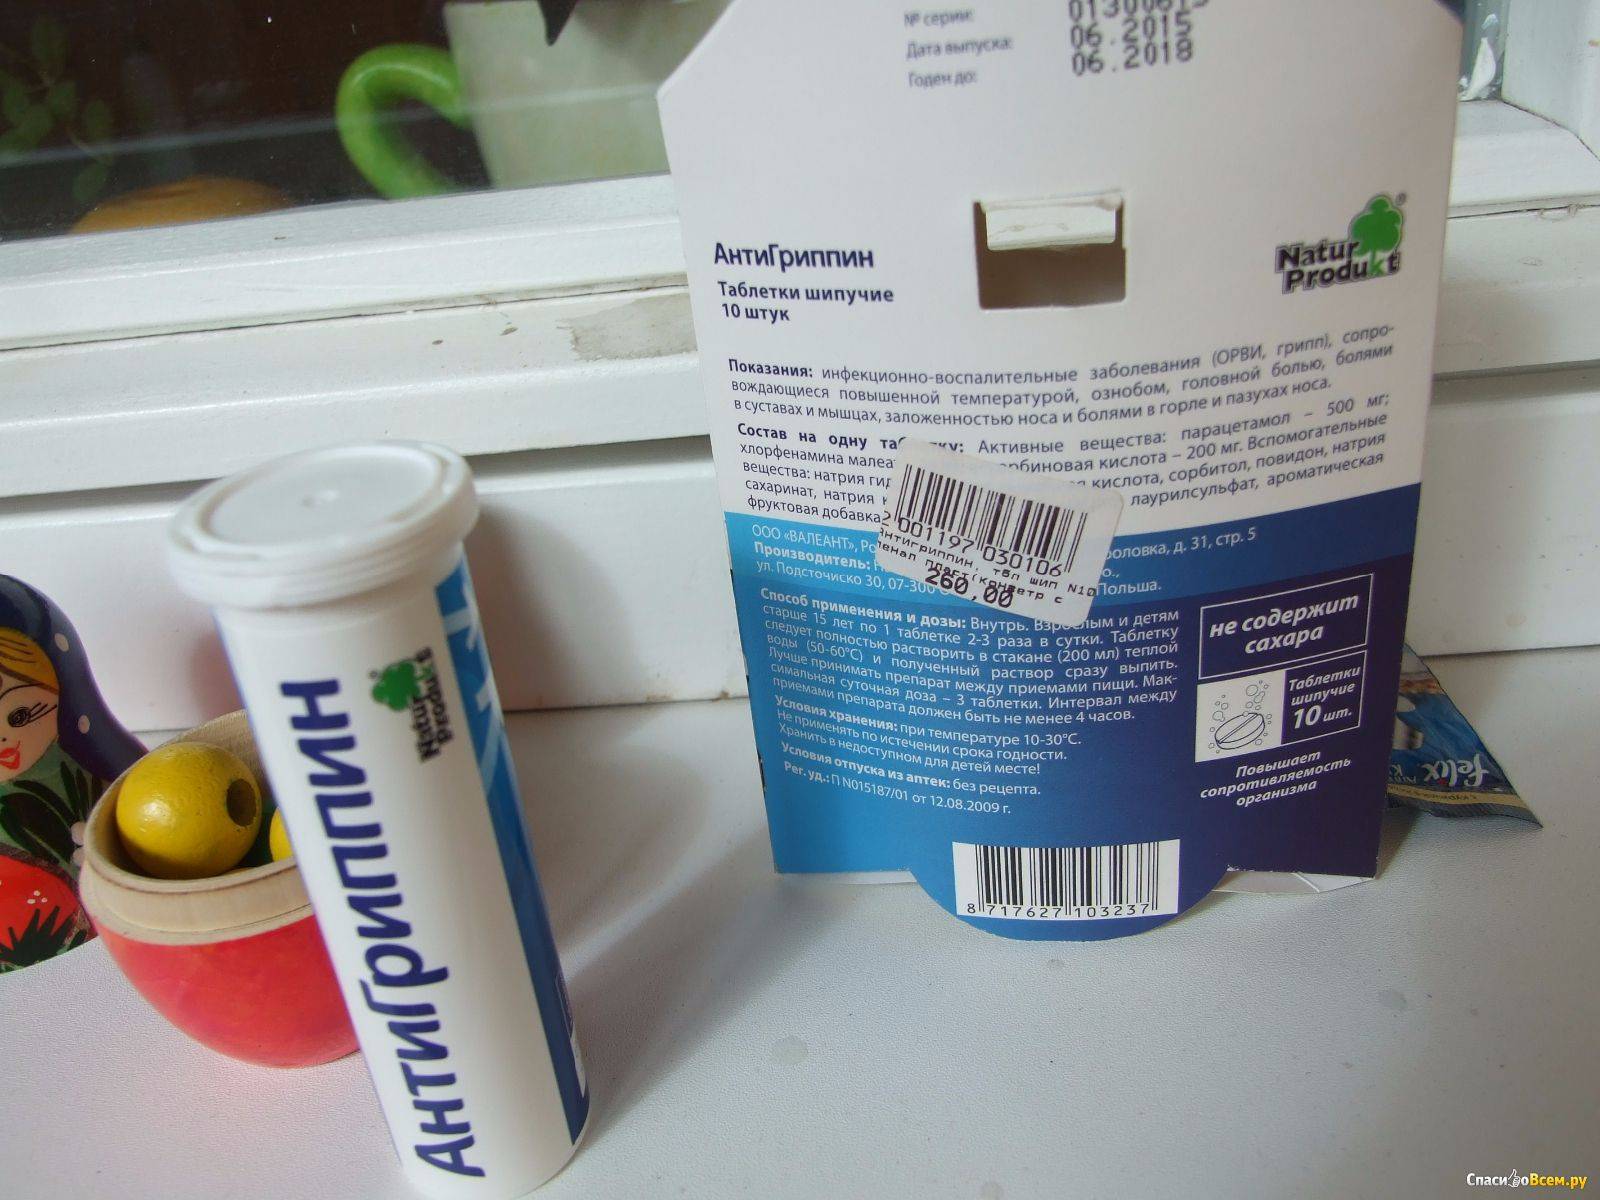 Состав и особенности применения антигриппина в таблетках или аптечного порошка, инструкция